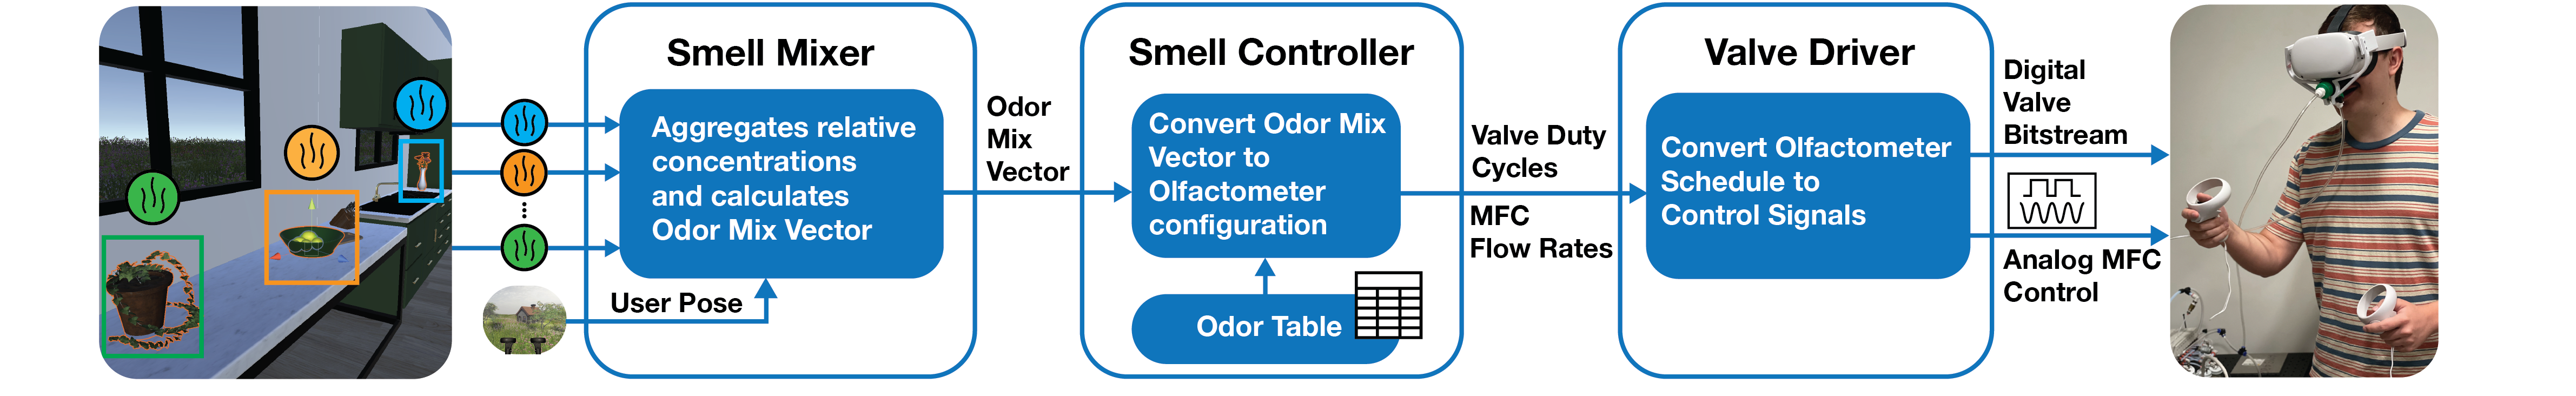 Smell Engine System Design